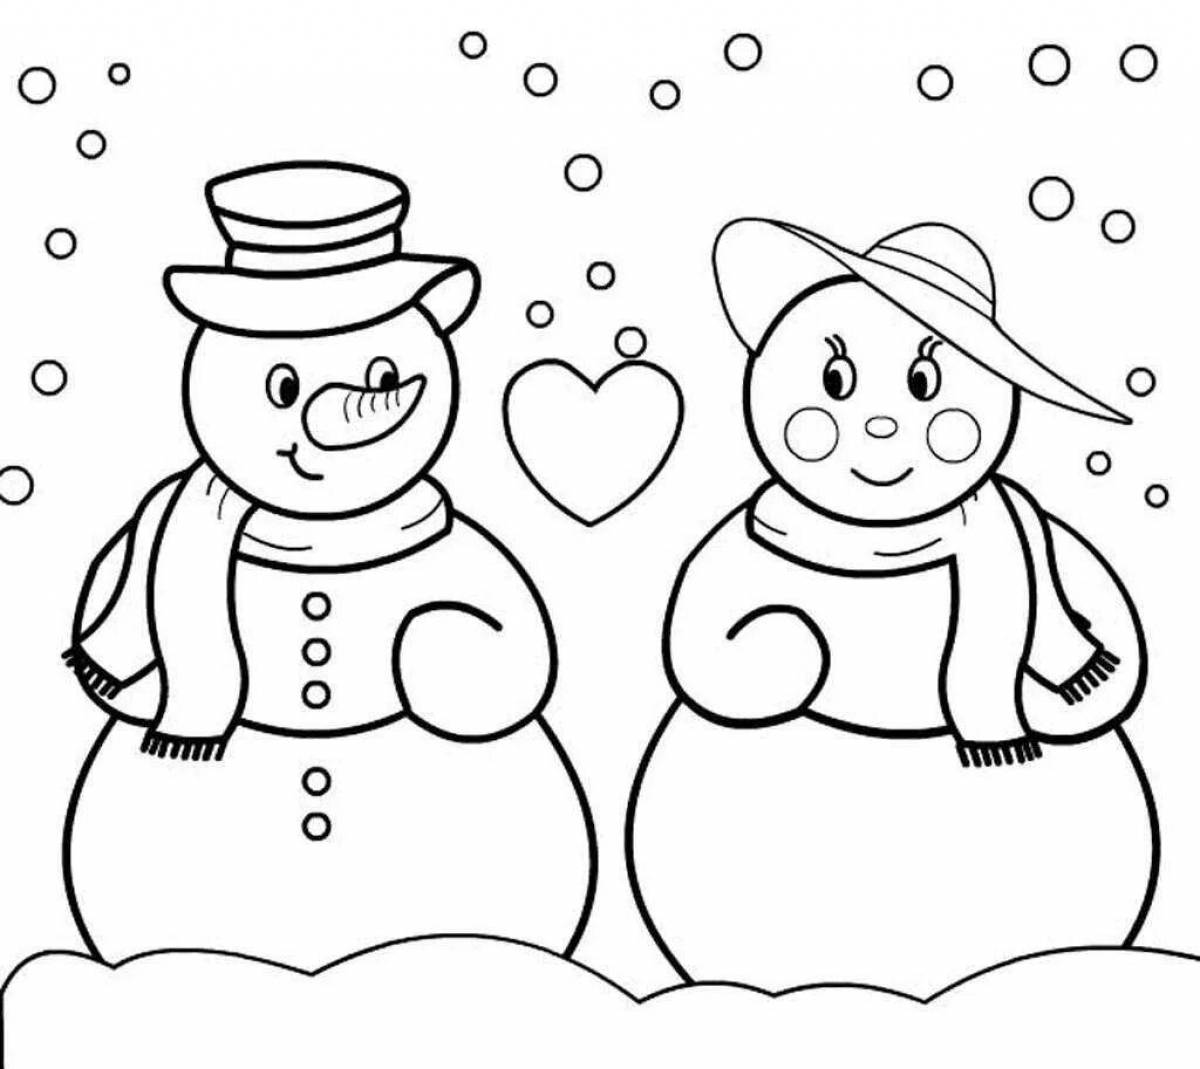 Сверкающая раскраска снеговик для детей 3 4